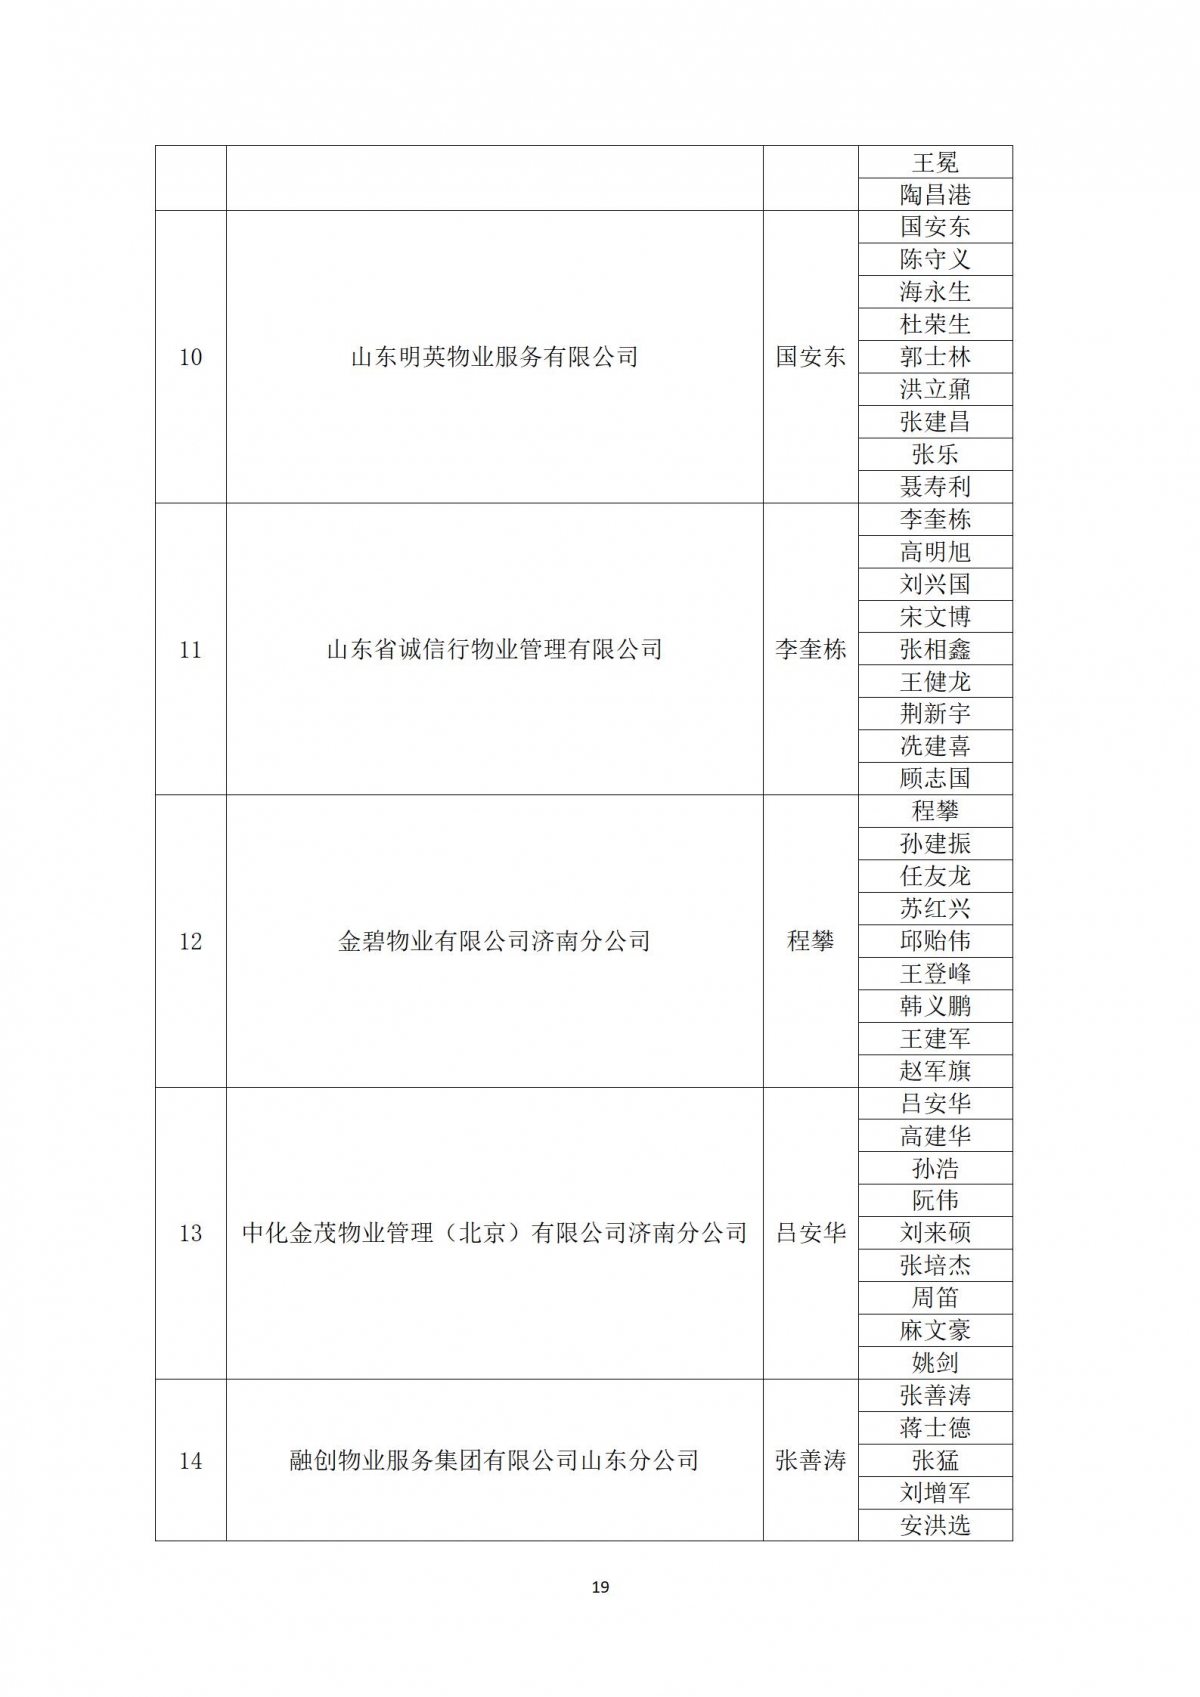 关于“天城杯”第七届济南市物业服务行业职业技能竞赛选手名单的公示_19